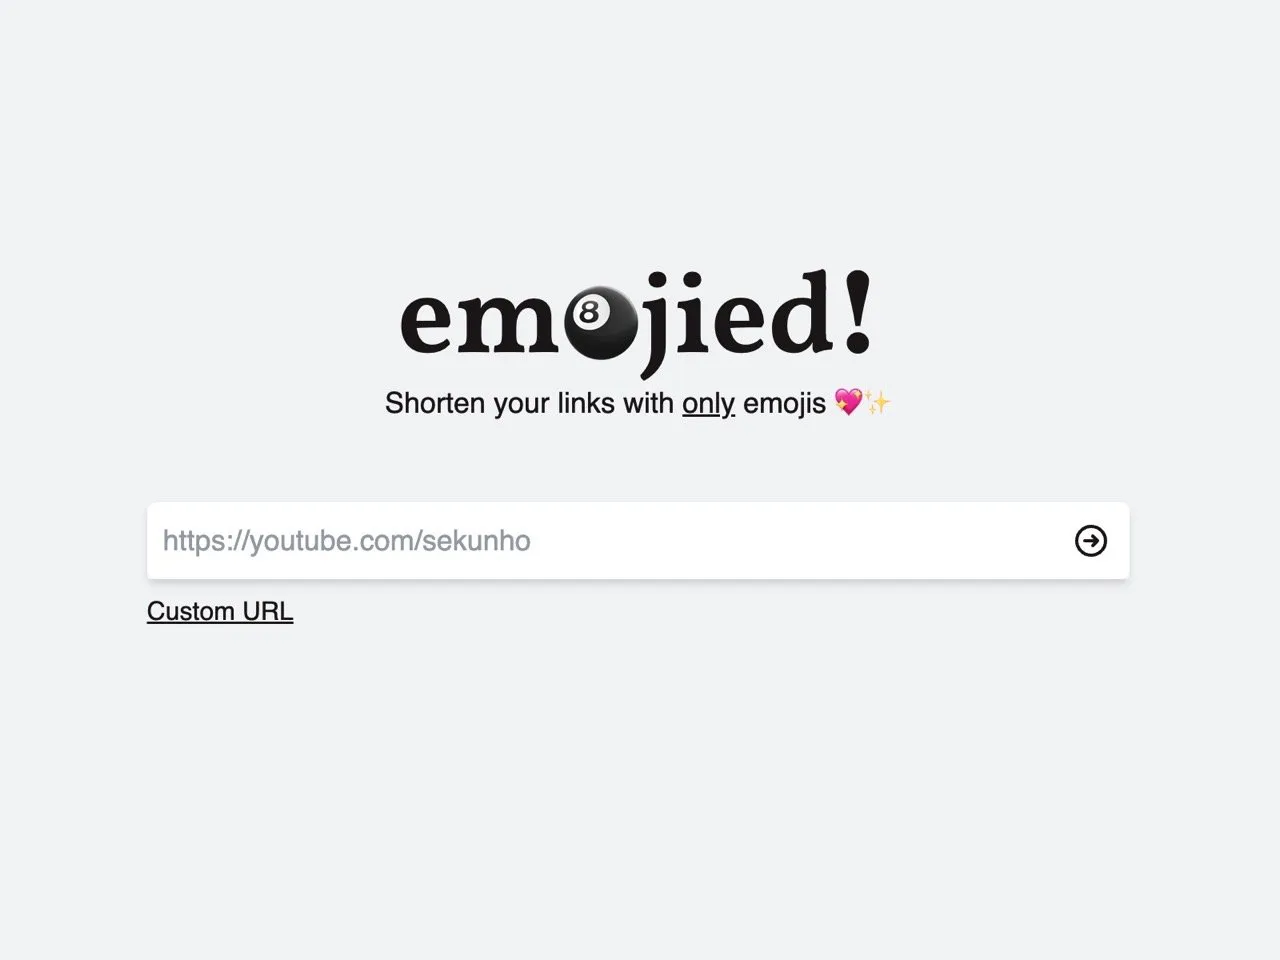 Emojied 免费缩网址工具，让短网址带有个性化表情符号&#x1f602;